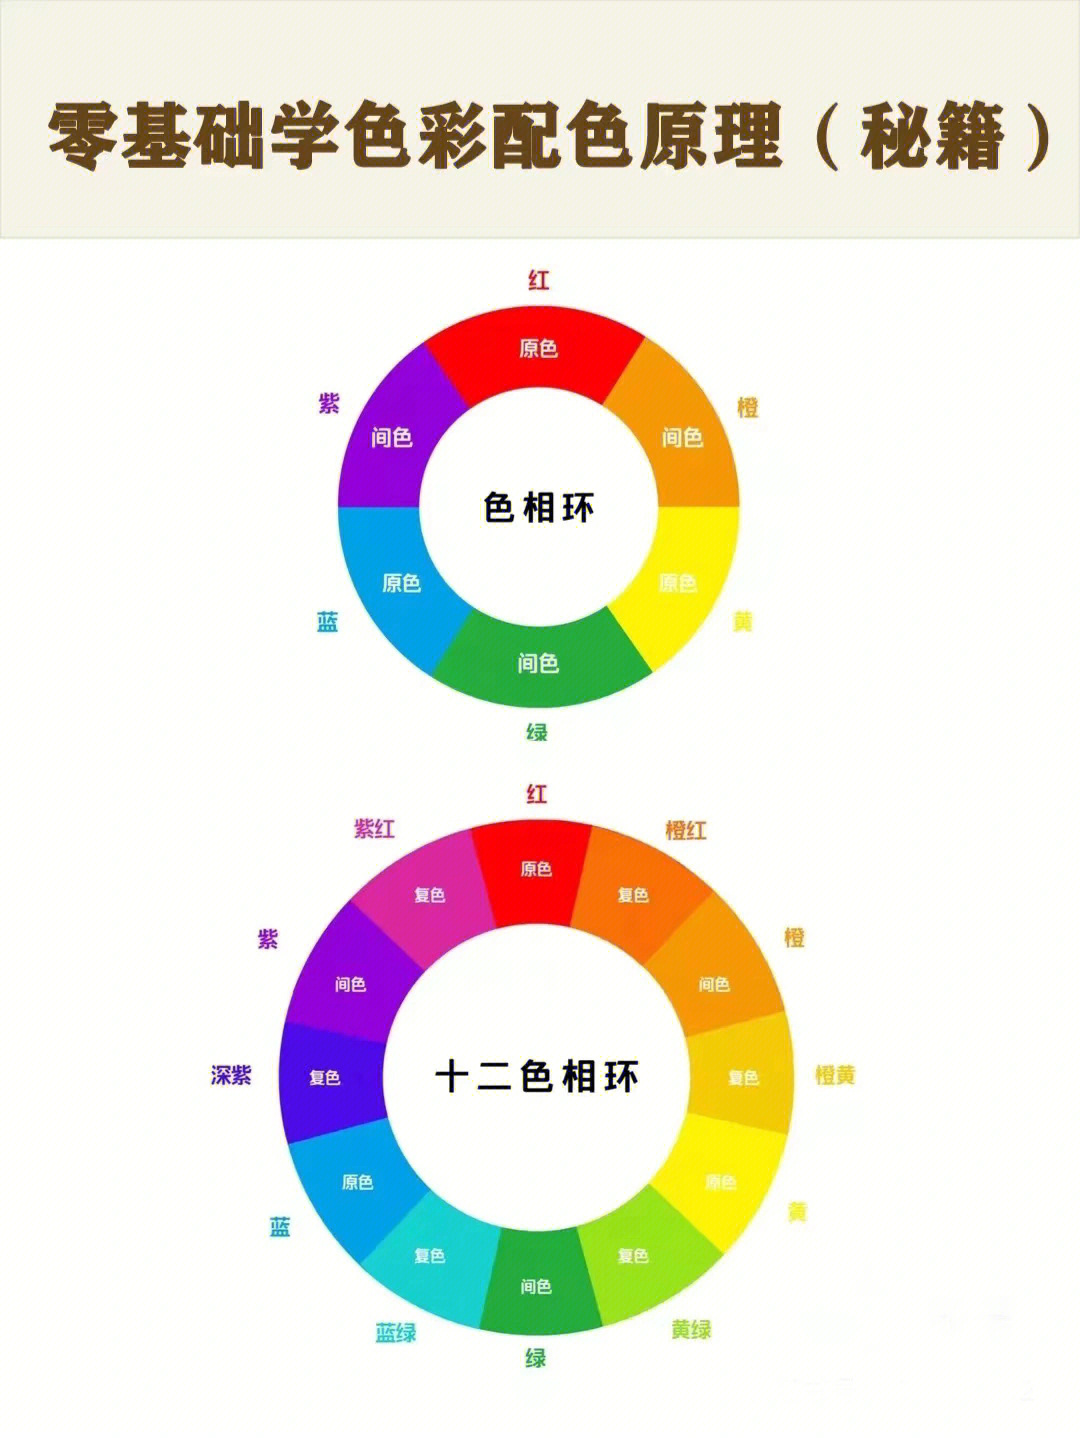 色彩的三要素是明度,色相和纯度明度,色相和纯度